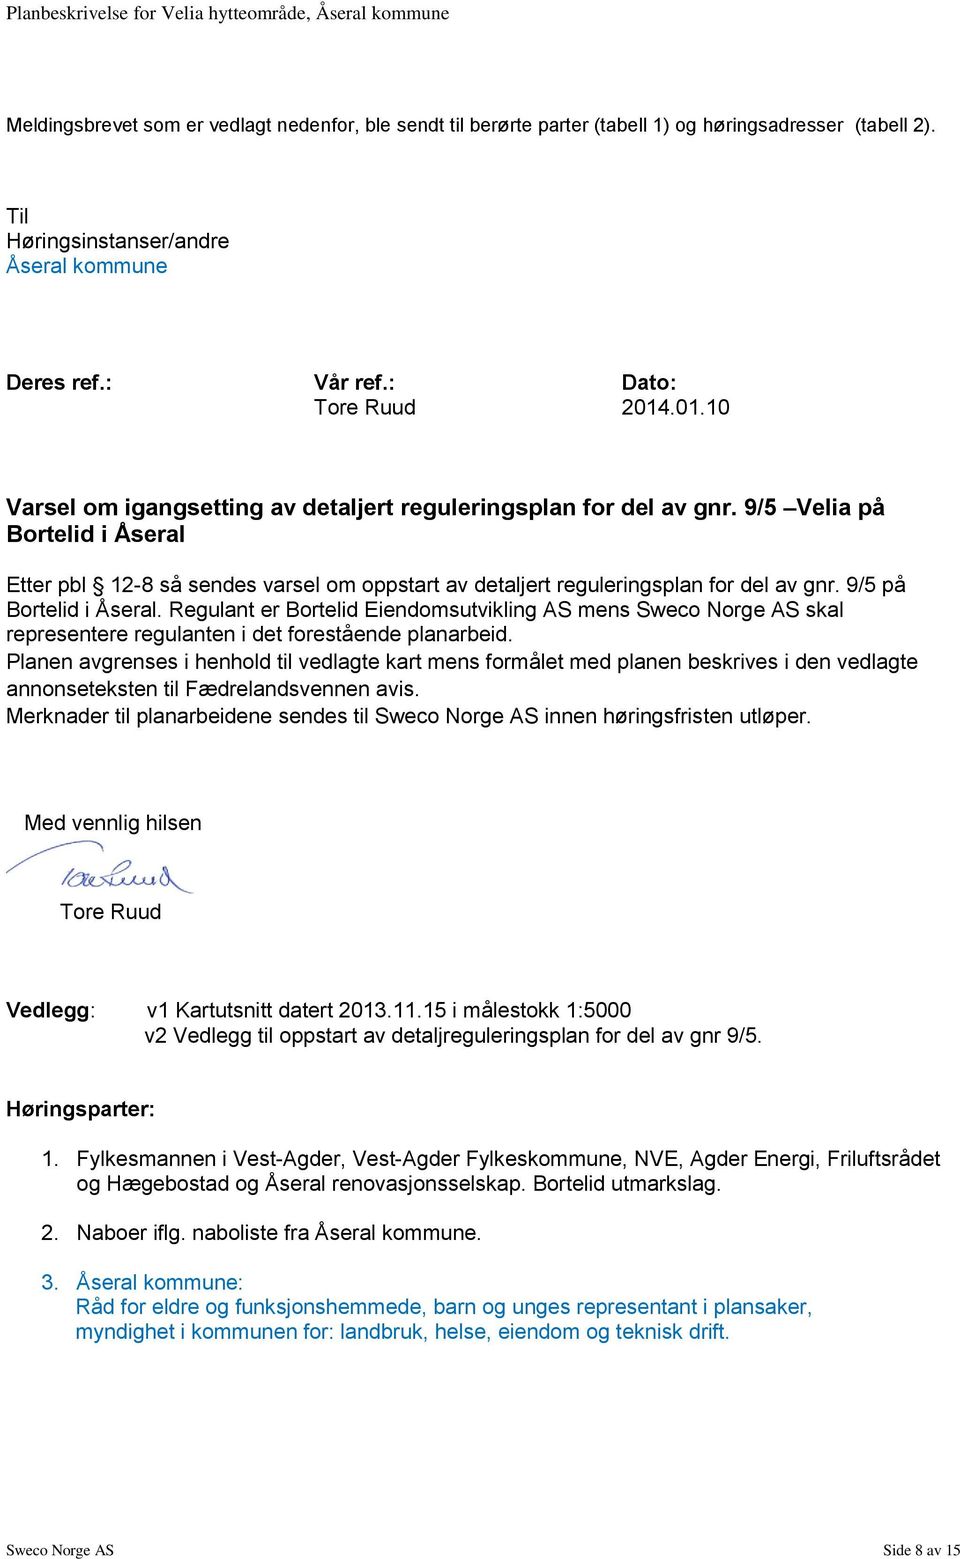 9/5 på Bortelid i Åseral. Regulant er Bortelid Eiendomsutvikling AS mens Sweco Norge AS skal representere regulanten i det forestående planarbeid.